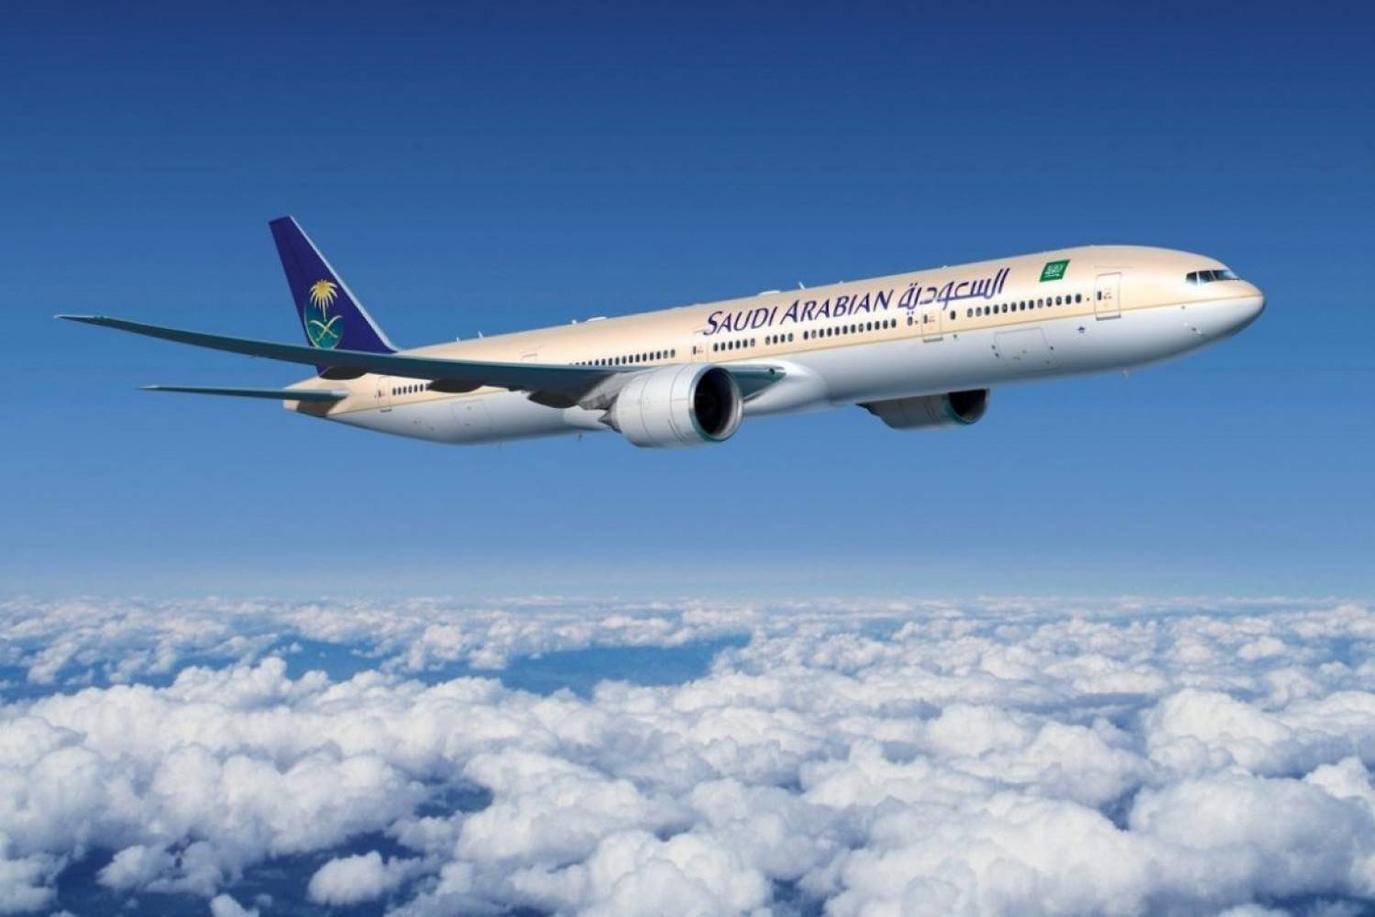 ارخص رحلات الطيران الدمام جدة عبر الخطوط الجوية السعودية